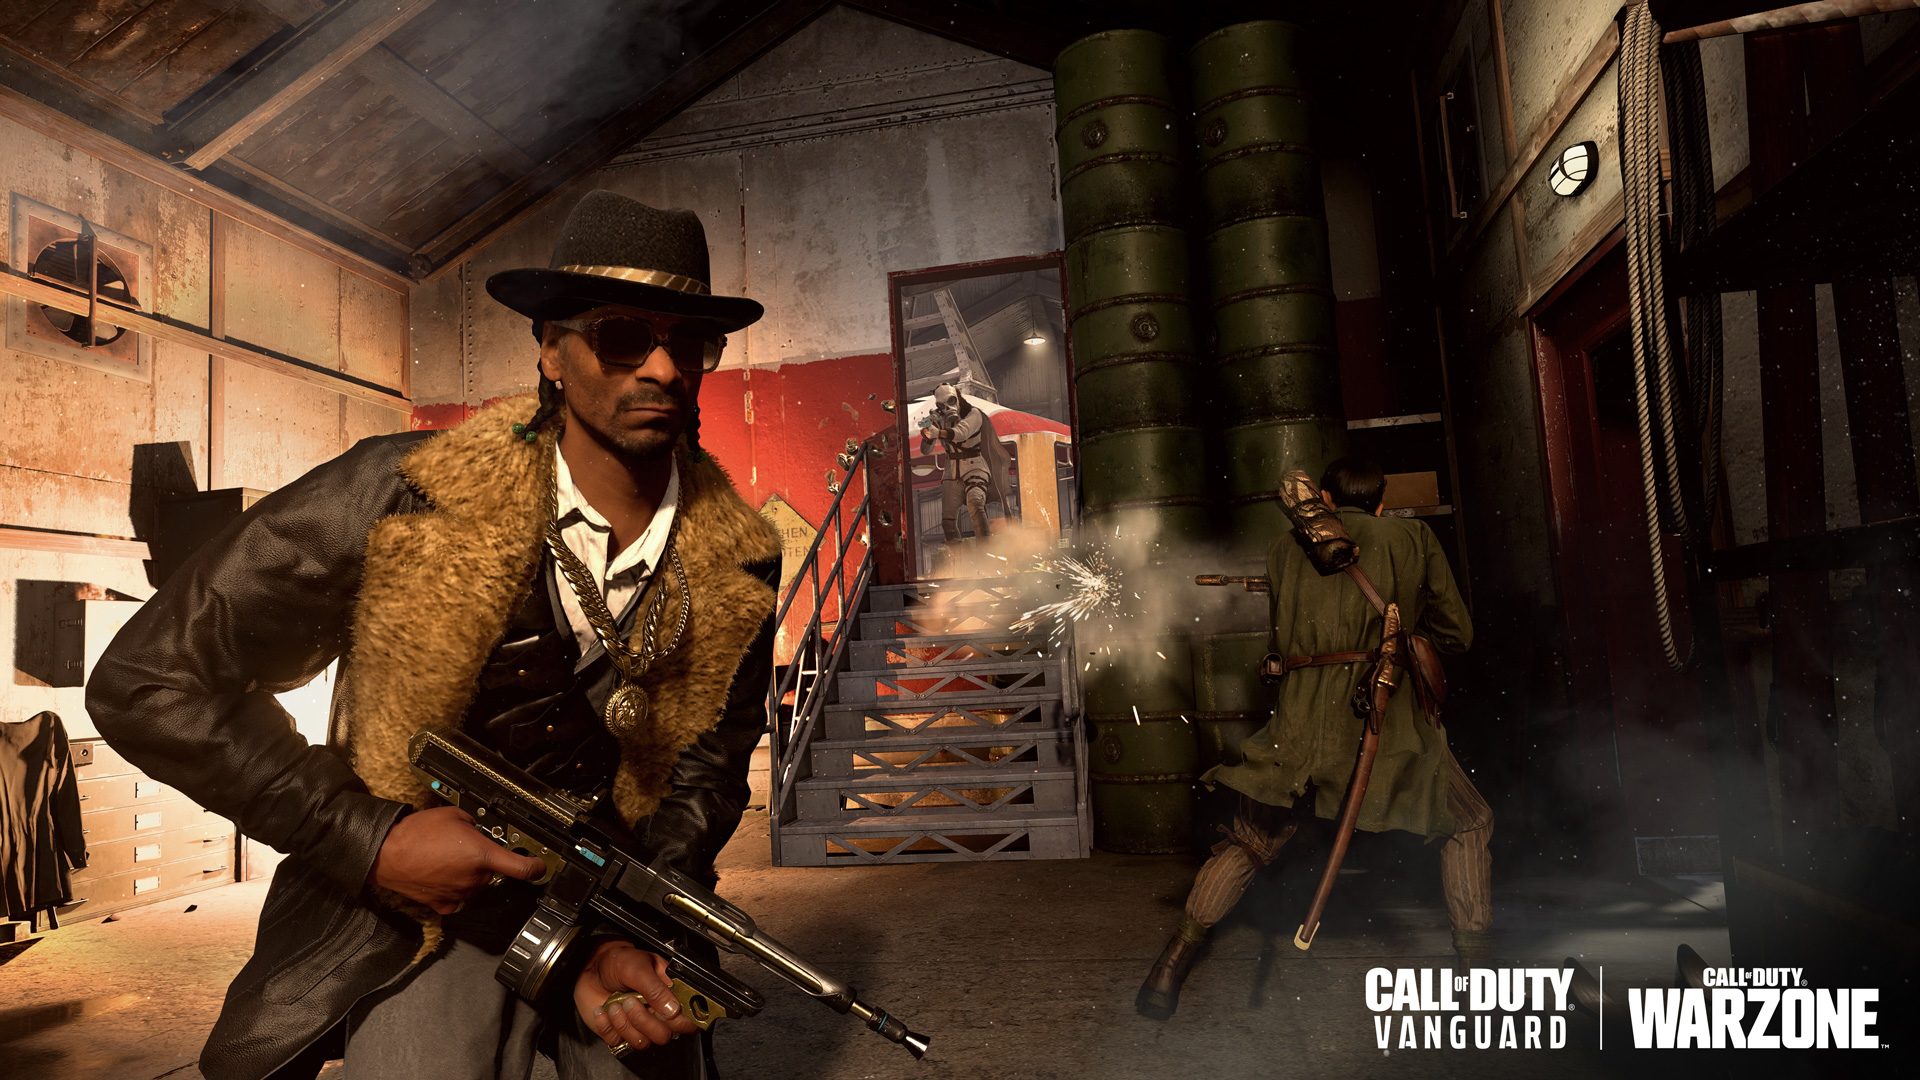 Capture d'écran d'une des apparences de Snoop Dogg dans Call of Duty Vanguard et Warzone. Il porte une fourrure et un fedora.